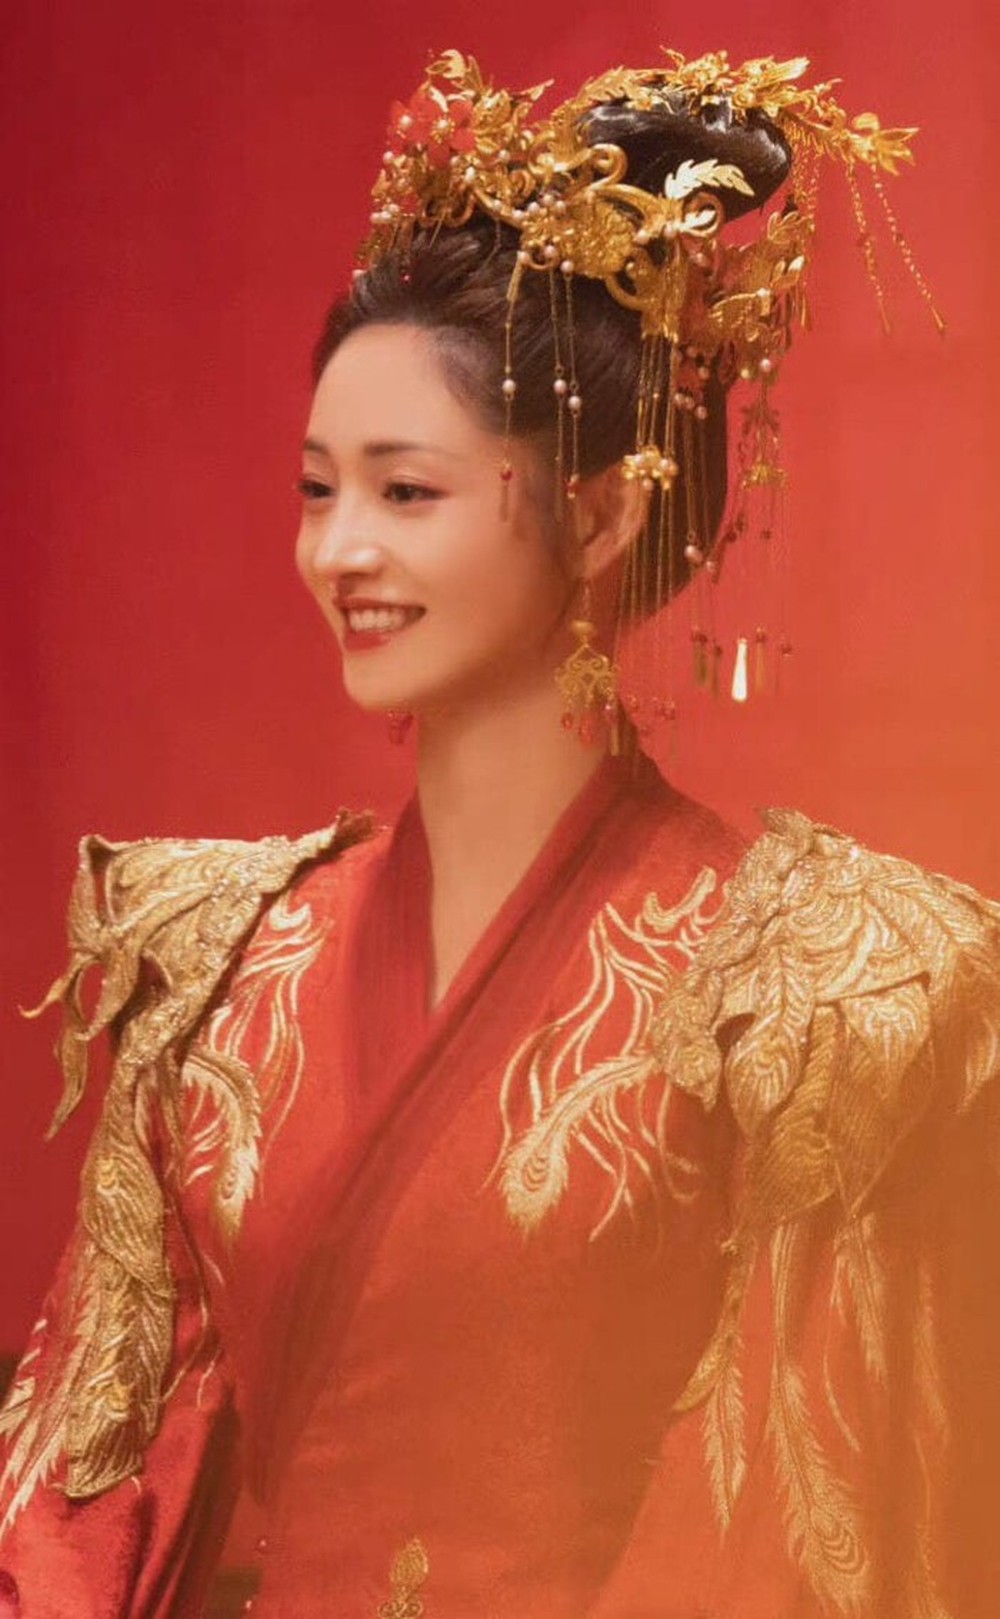  7 tân nương đẹp nhất màn ảnh Hoa ngữ 2022: Dương Tử - Triệu Lộ Tư xinh nức nở cũng phải chịu thua nhan sắc diễm lệ của trùm cuối - Ảnh 11.